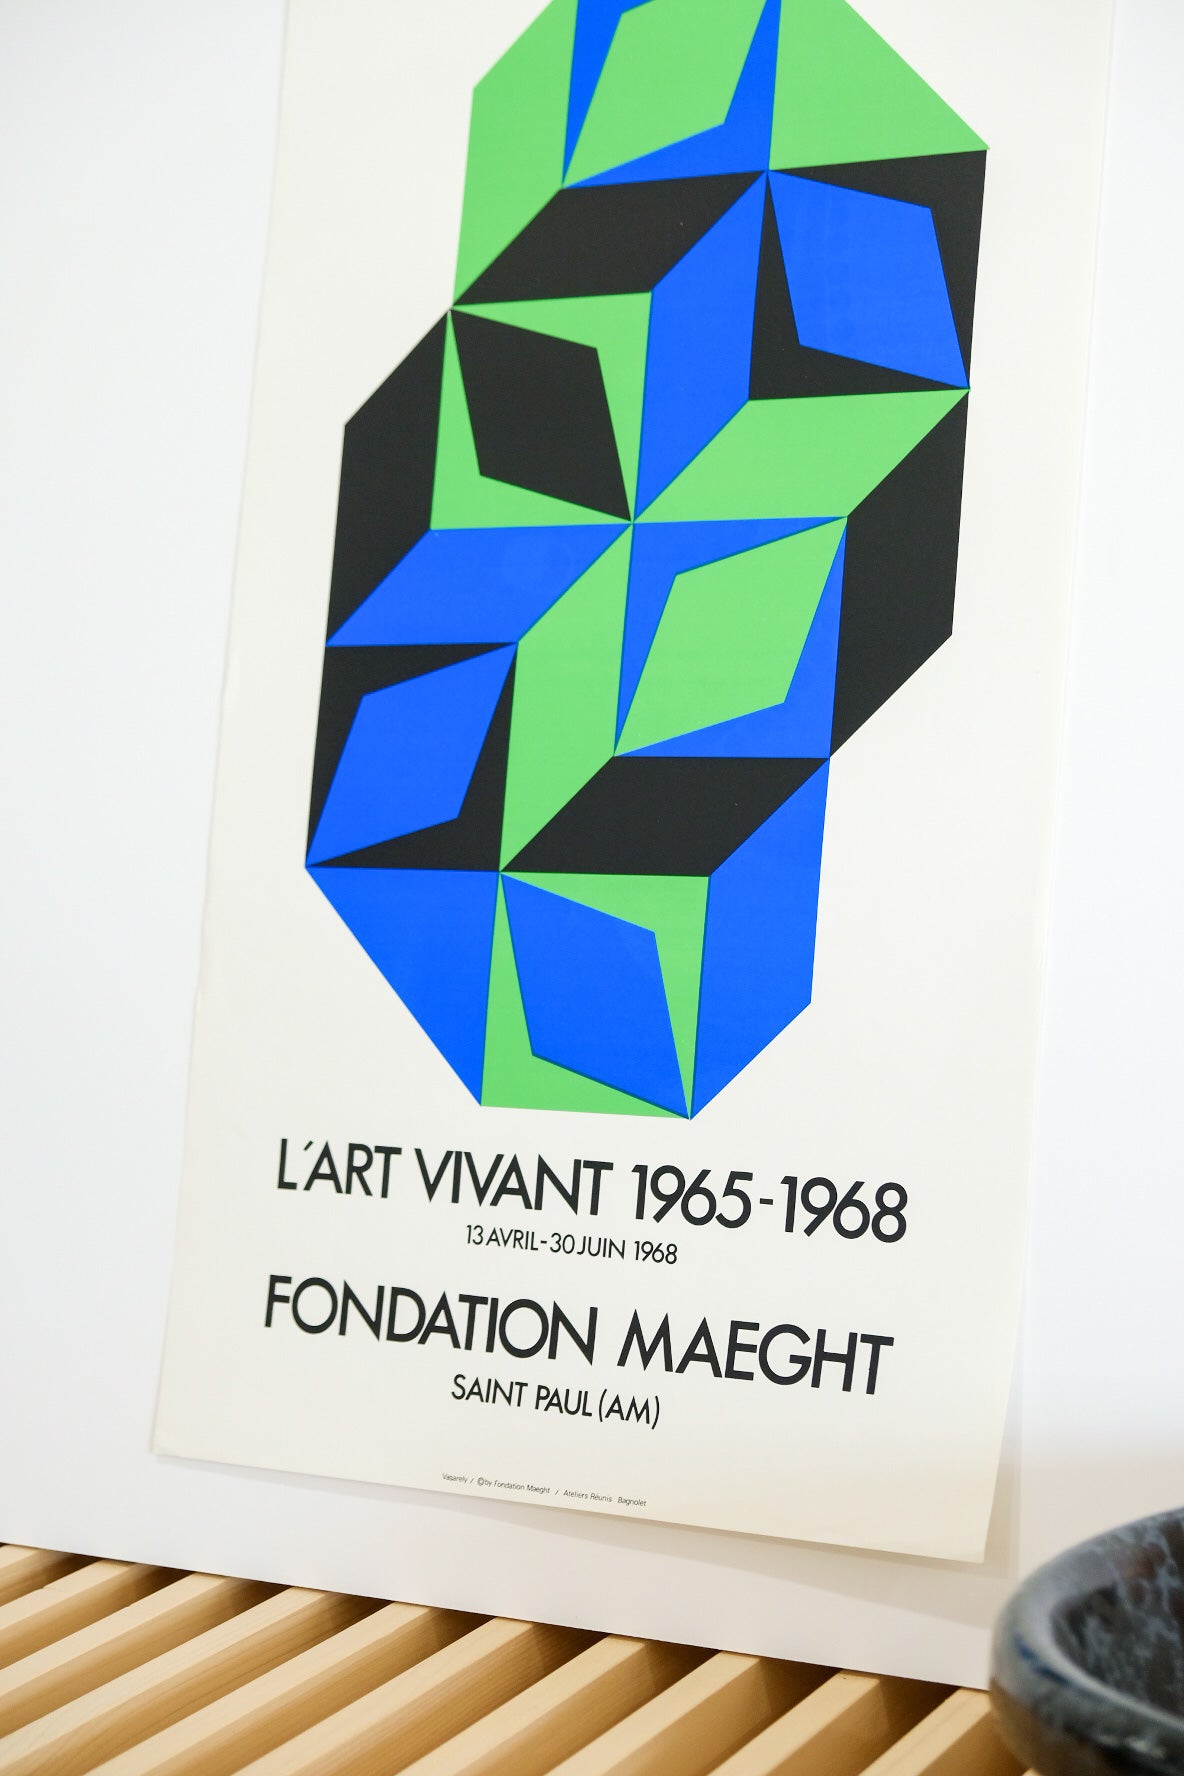 Victor Vasarely "L'ART VIVANT 1965-1968"